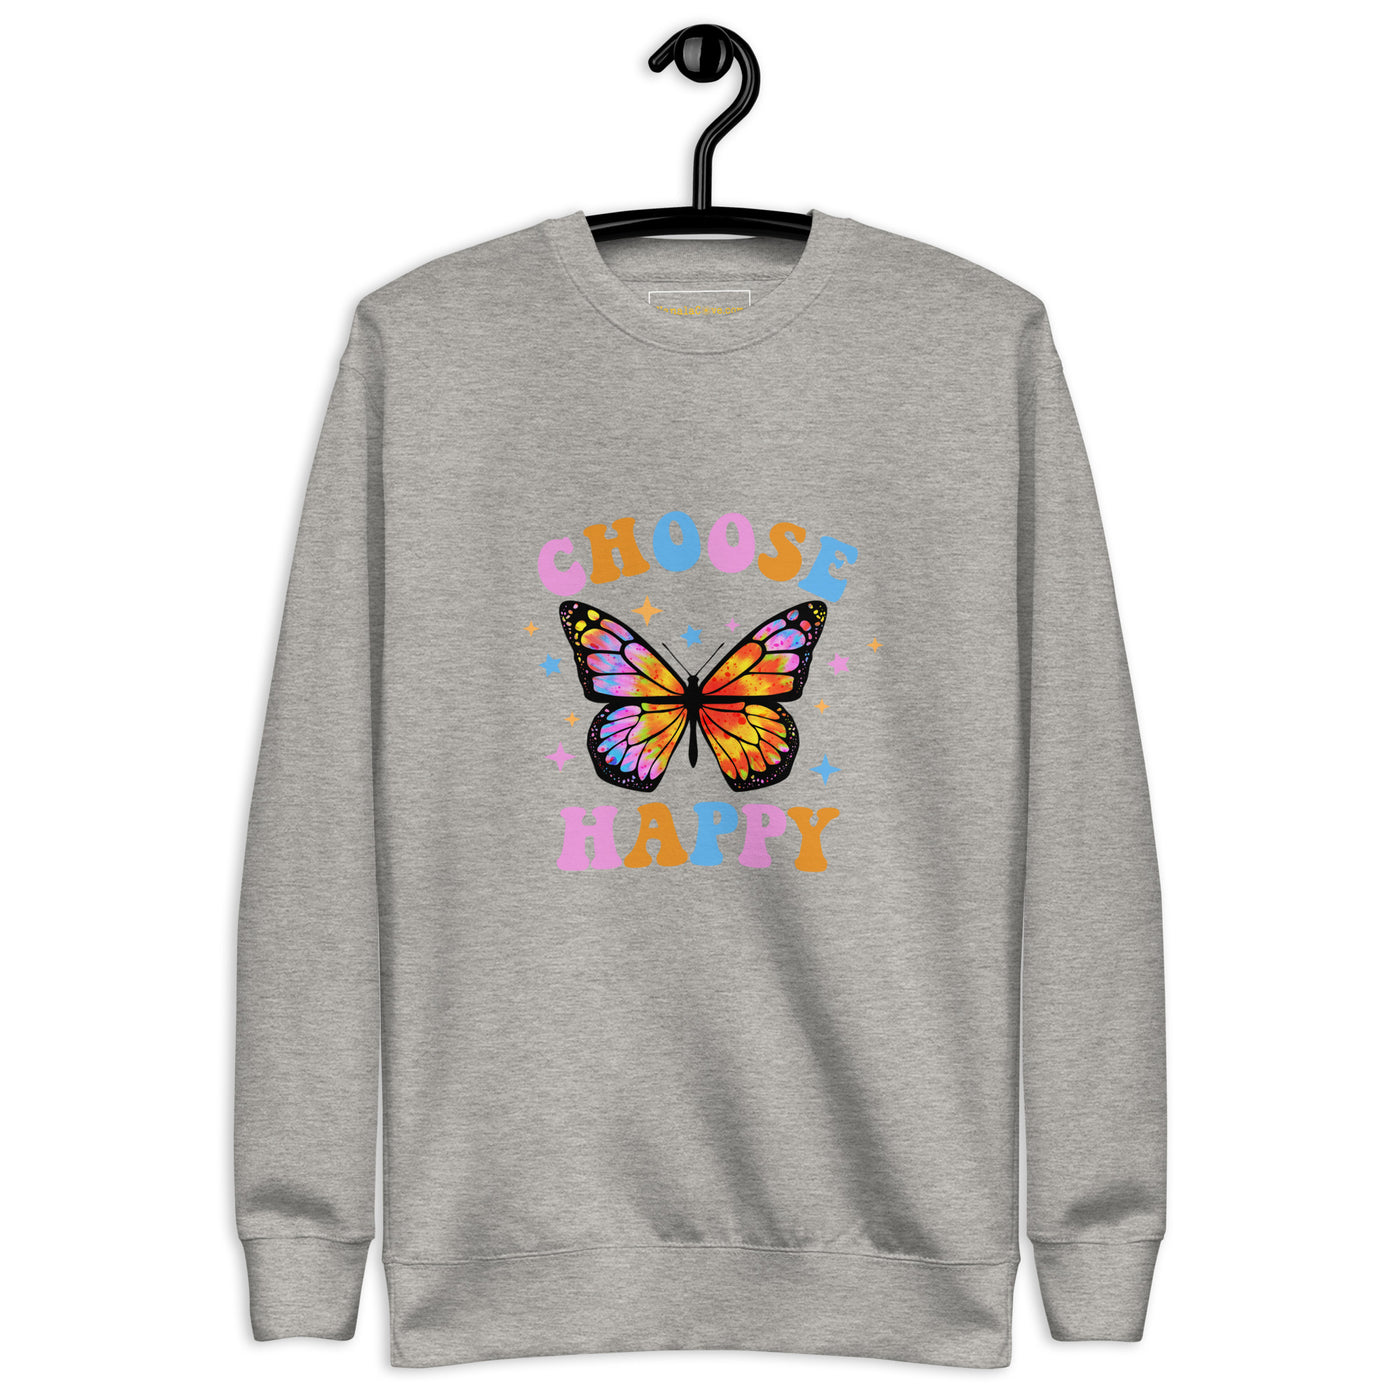 Choose Empathy Preppy Butterfly Sweatshirt For Women - Trends Bedding